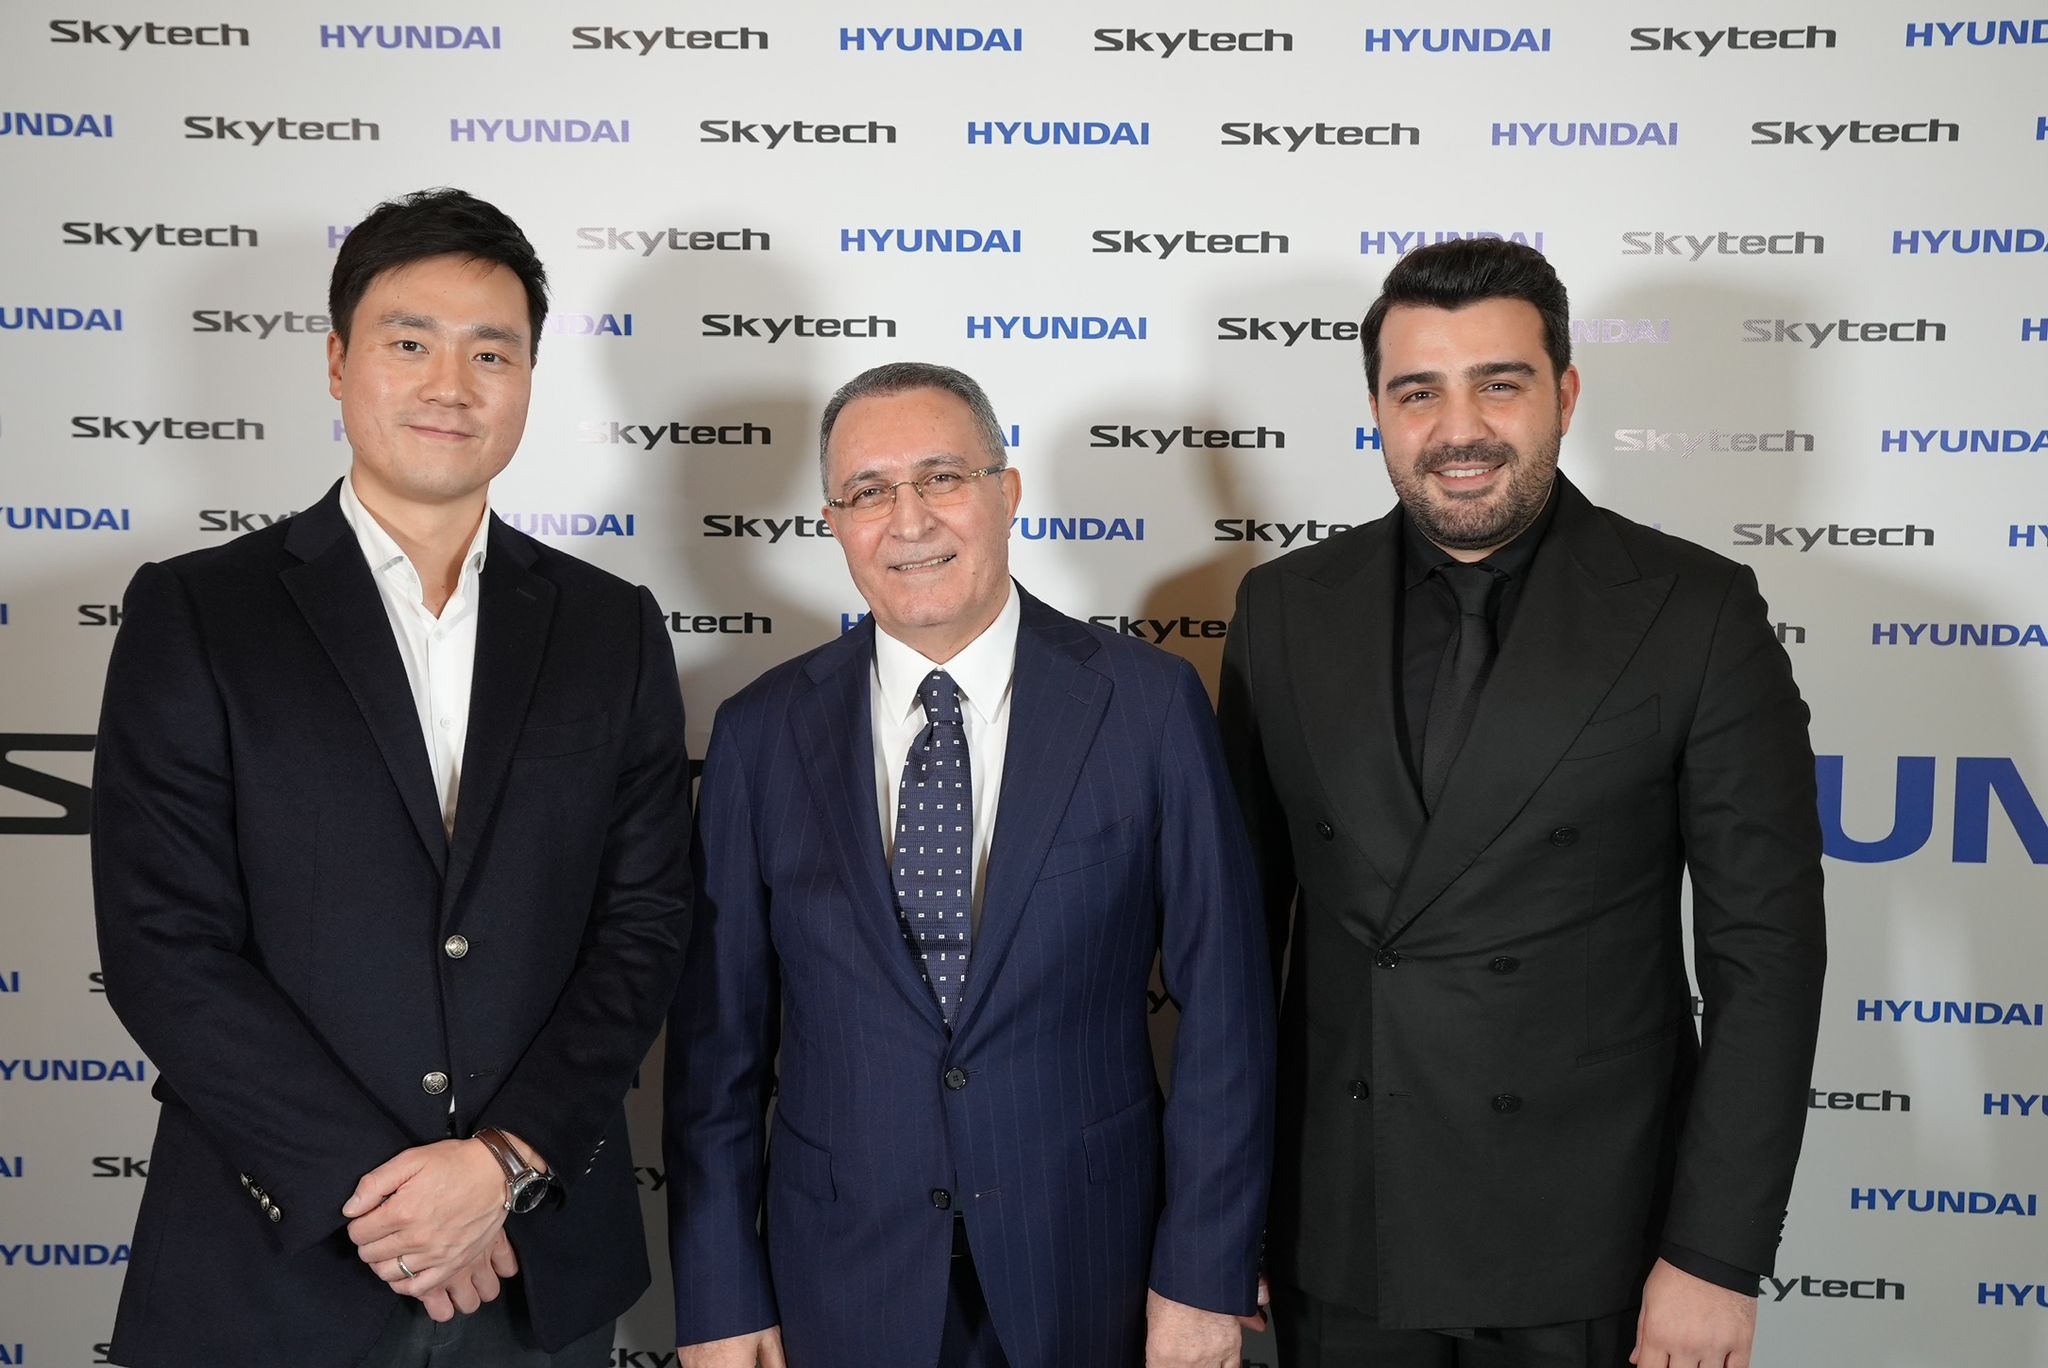 Anadolu Ajansı / Skytech ve Hyundai televizyon grubunda iş birliğine imza attı